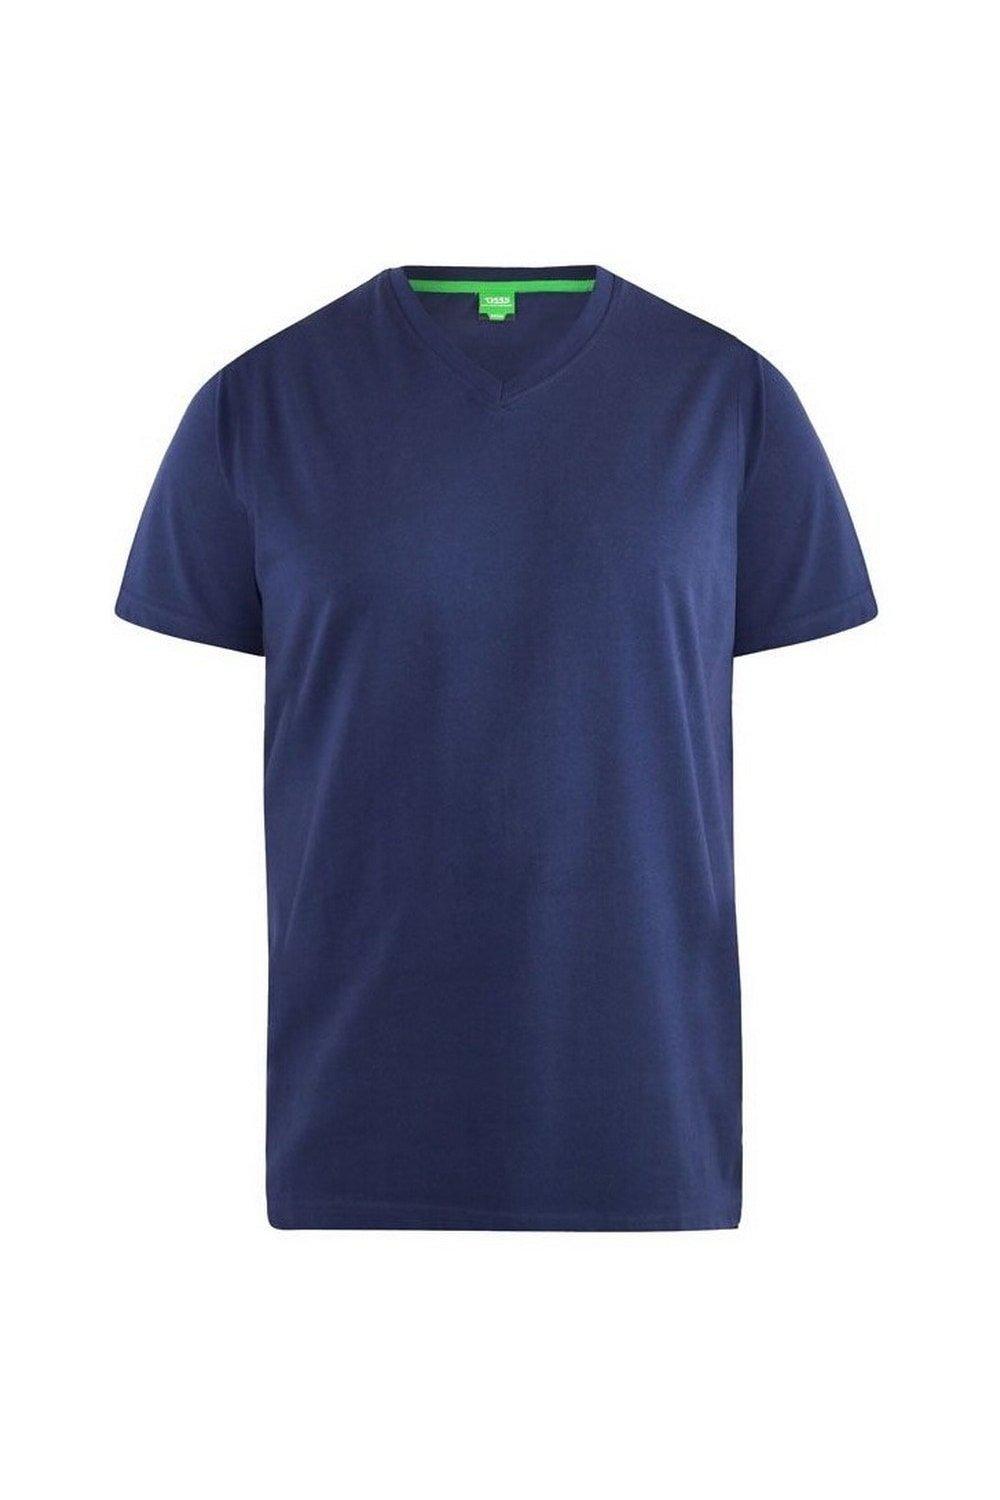 D555 Хлопковая футболка Kingsize Signature-1 Duke Clothing, темно-синий